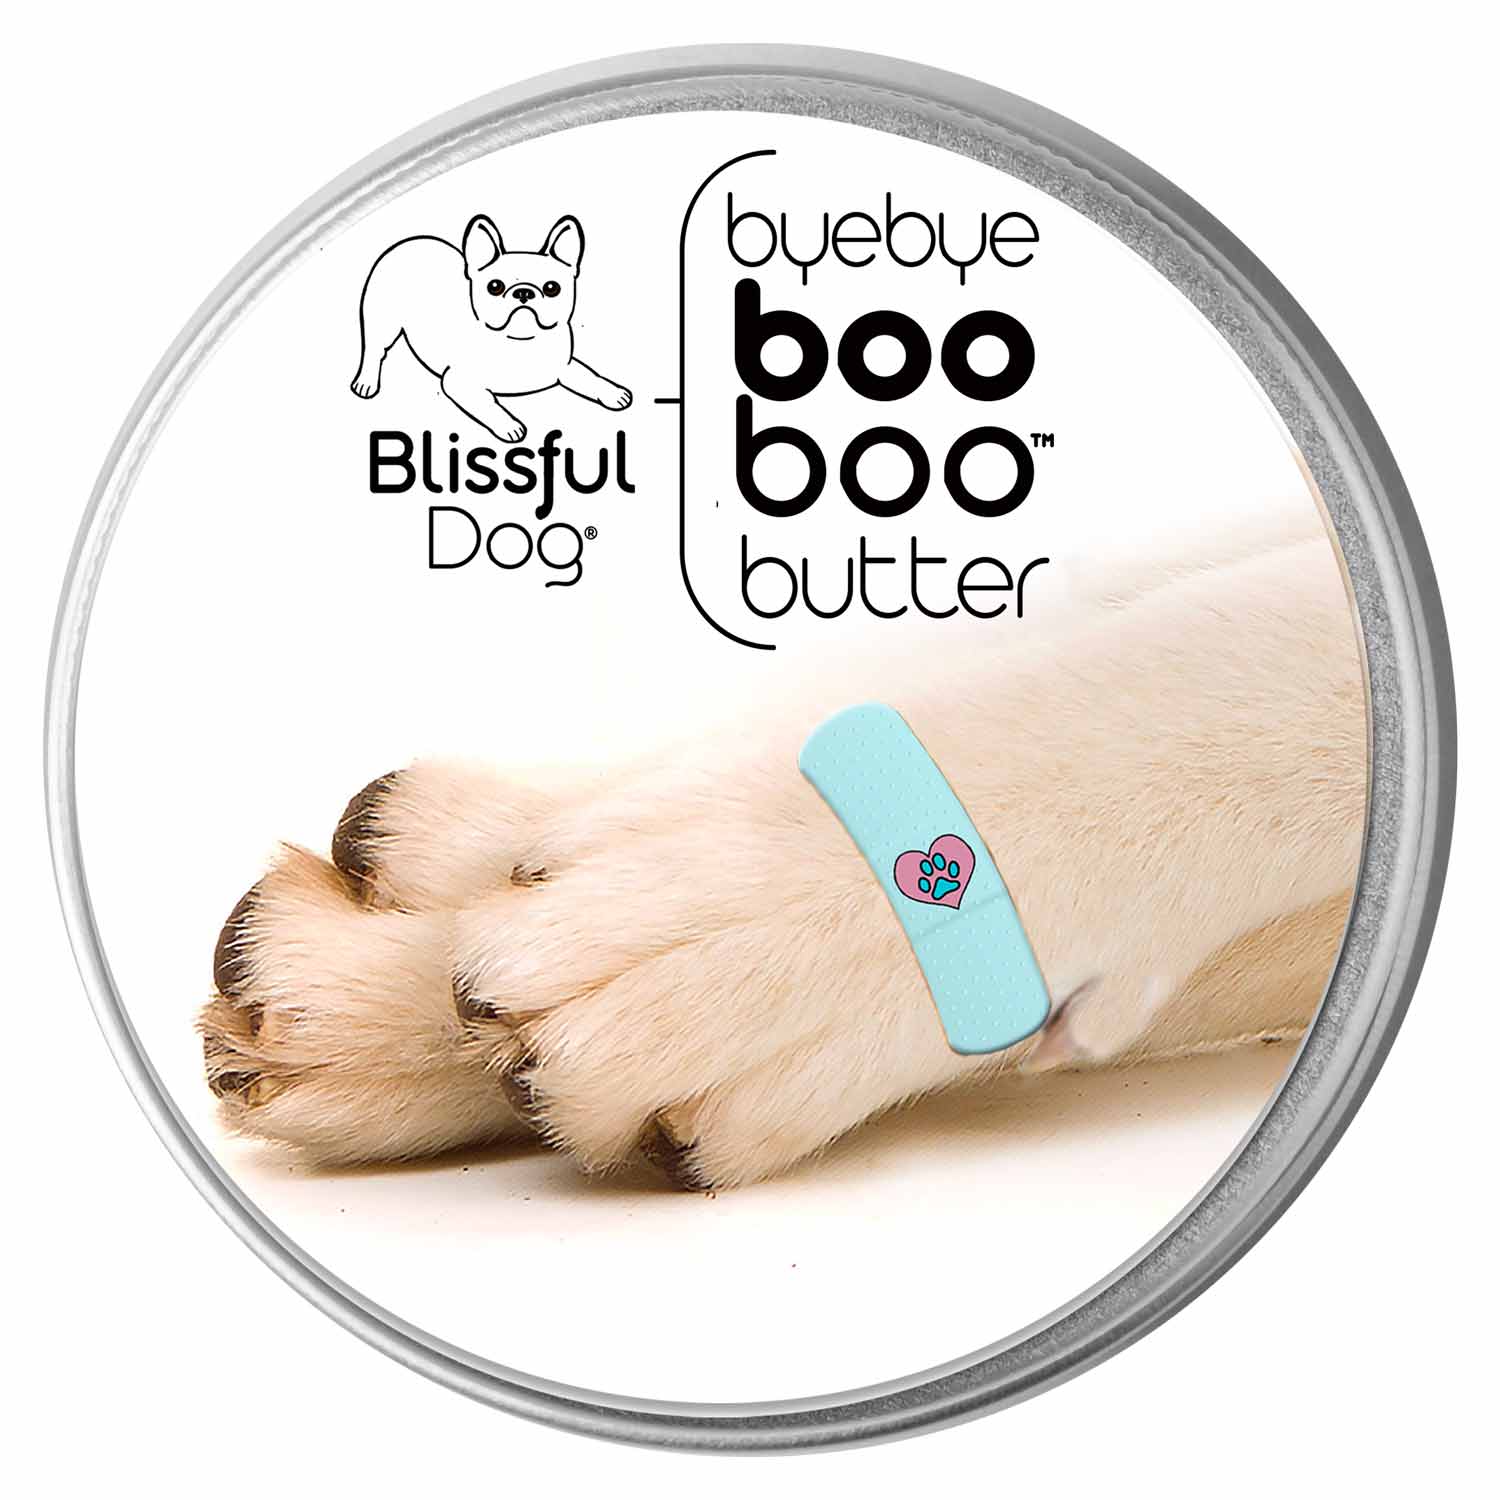 blissful-dog-boo-boo-butter